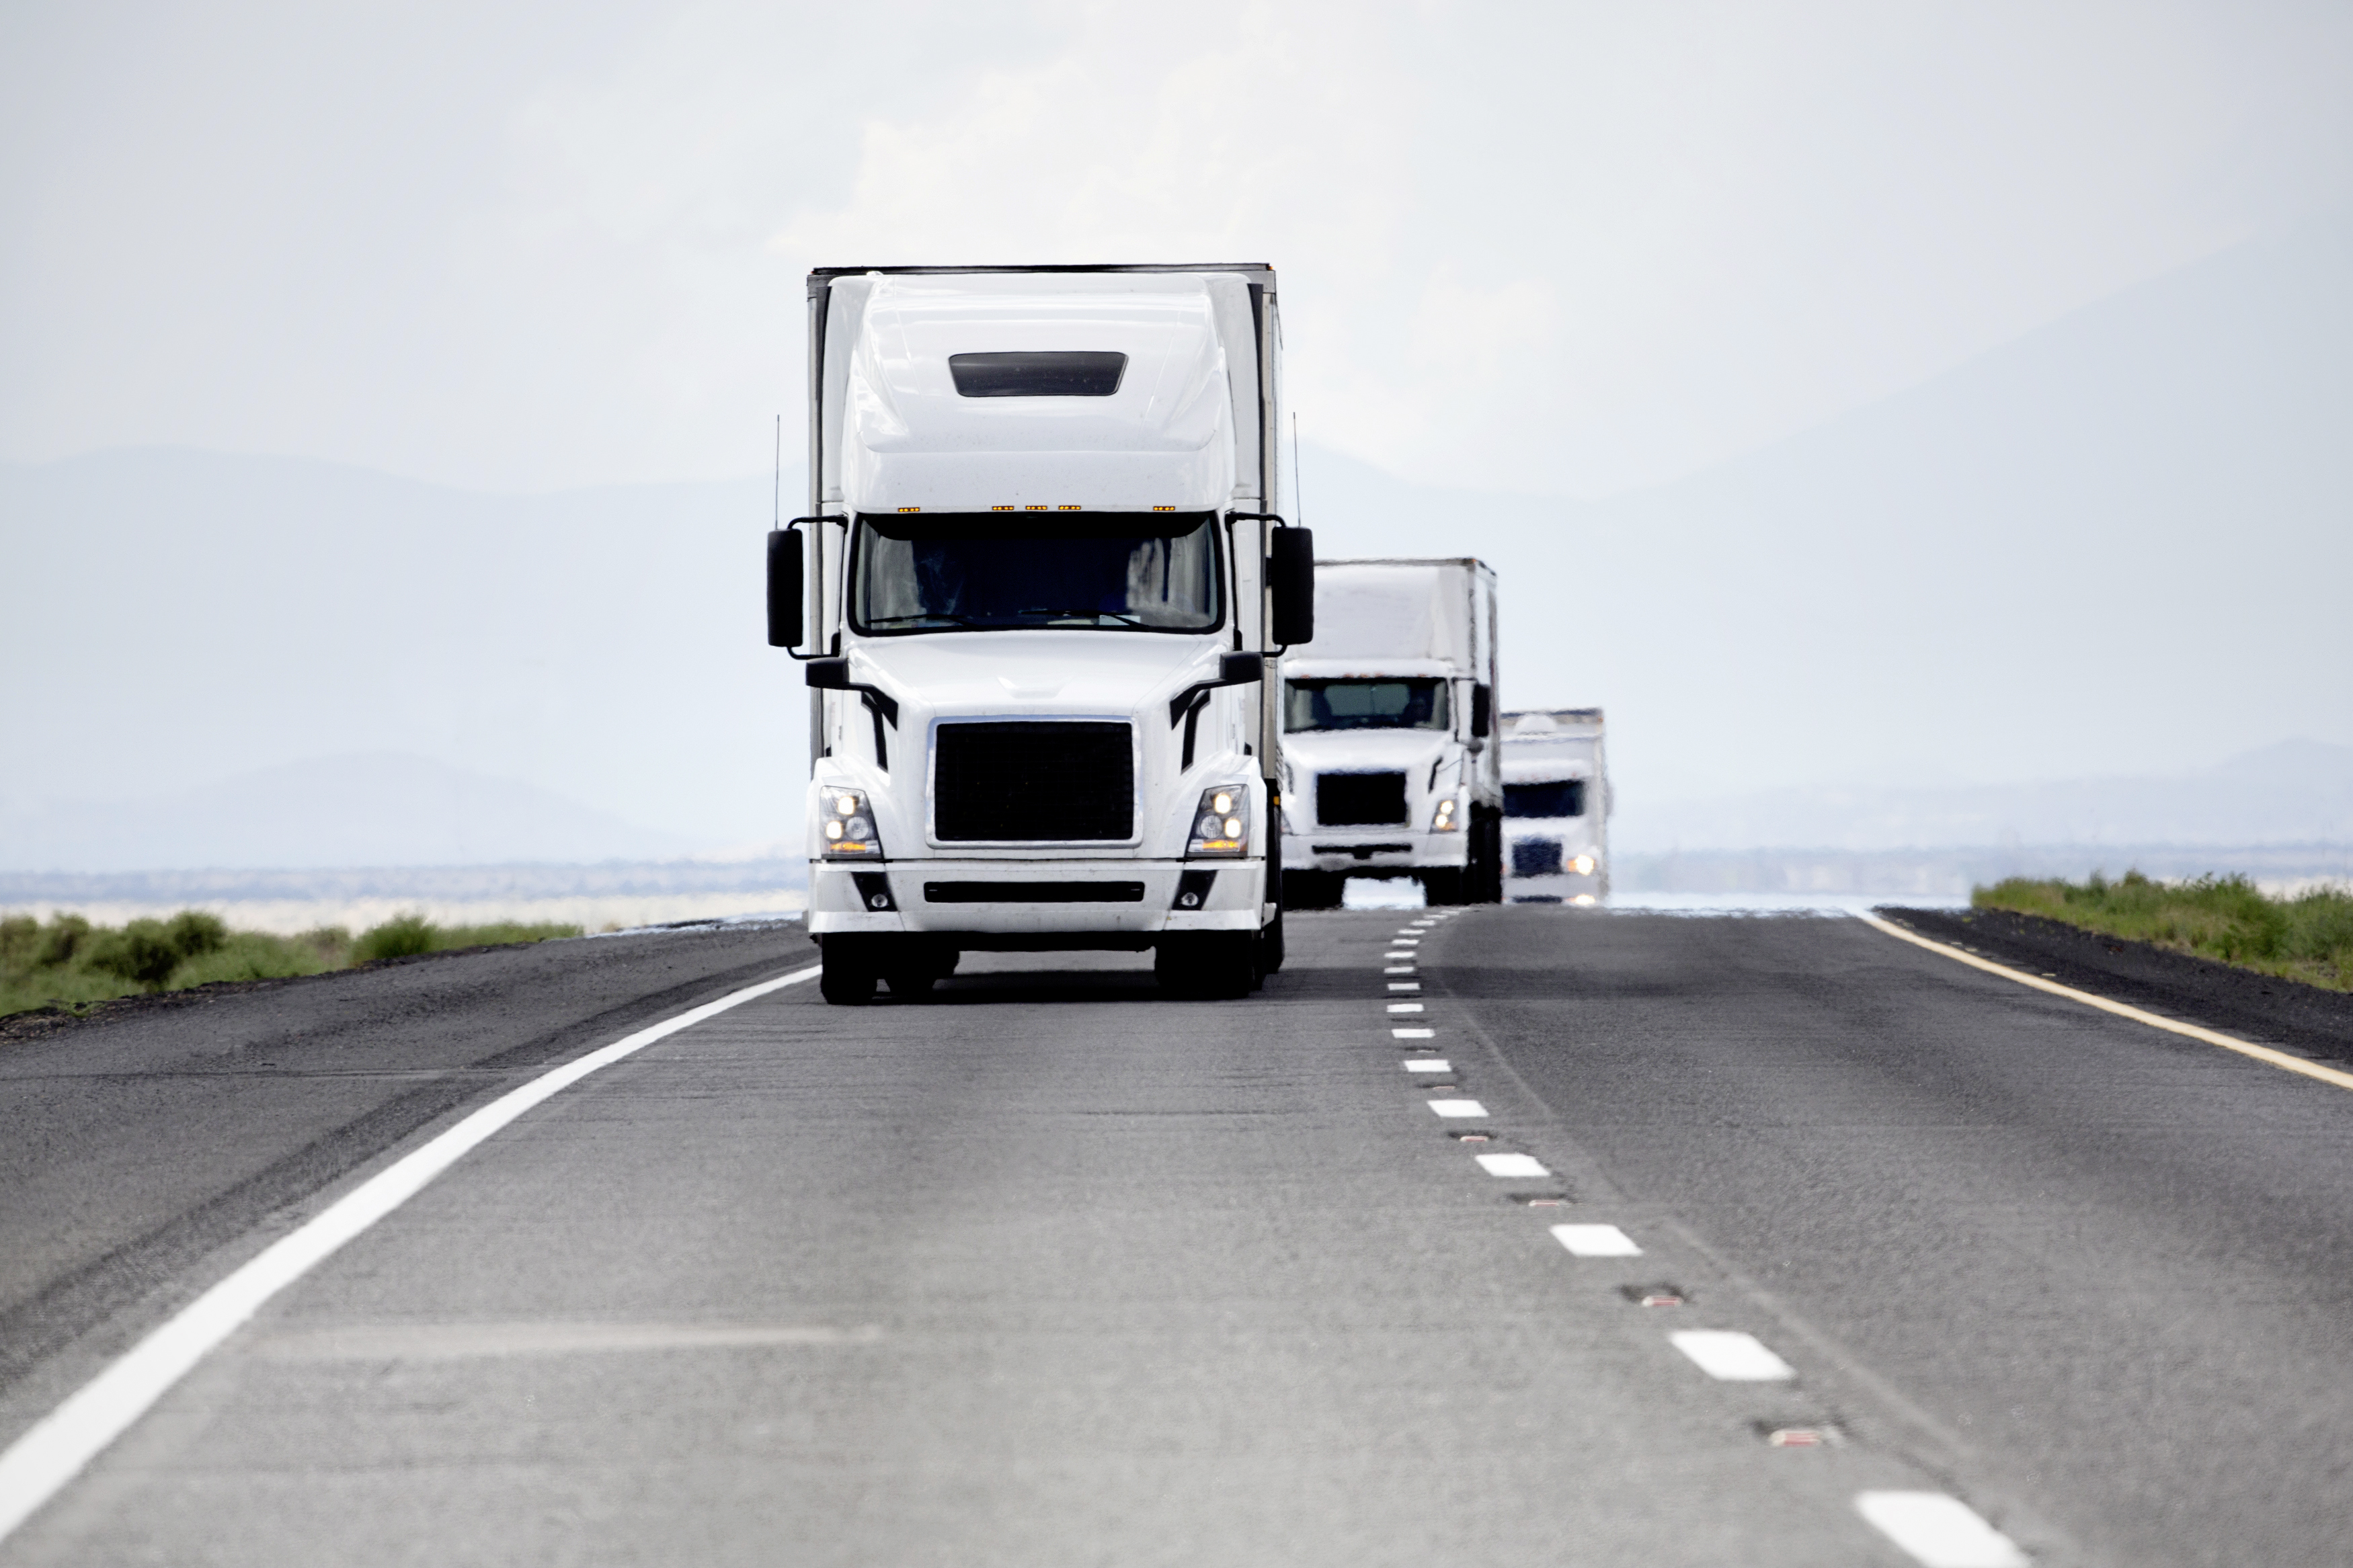 Tevva przyspiesza dostawy ciężarówek o zerowej emisji